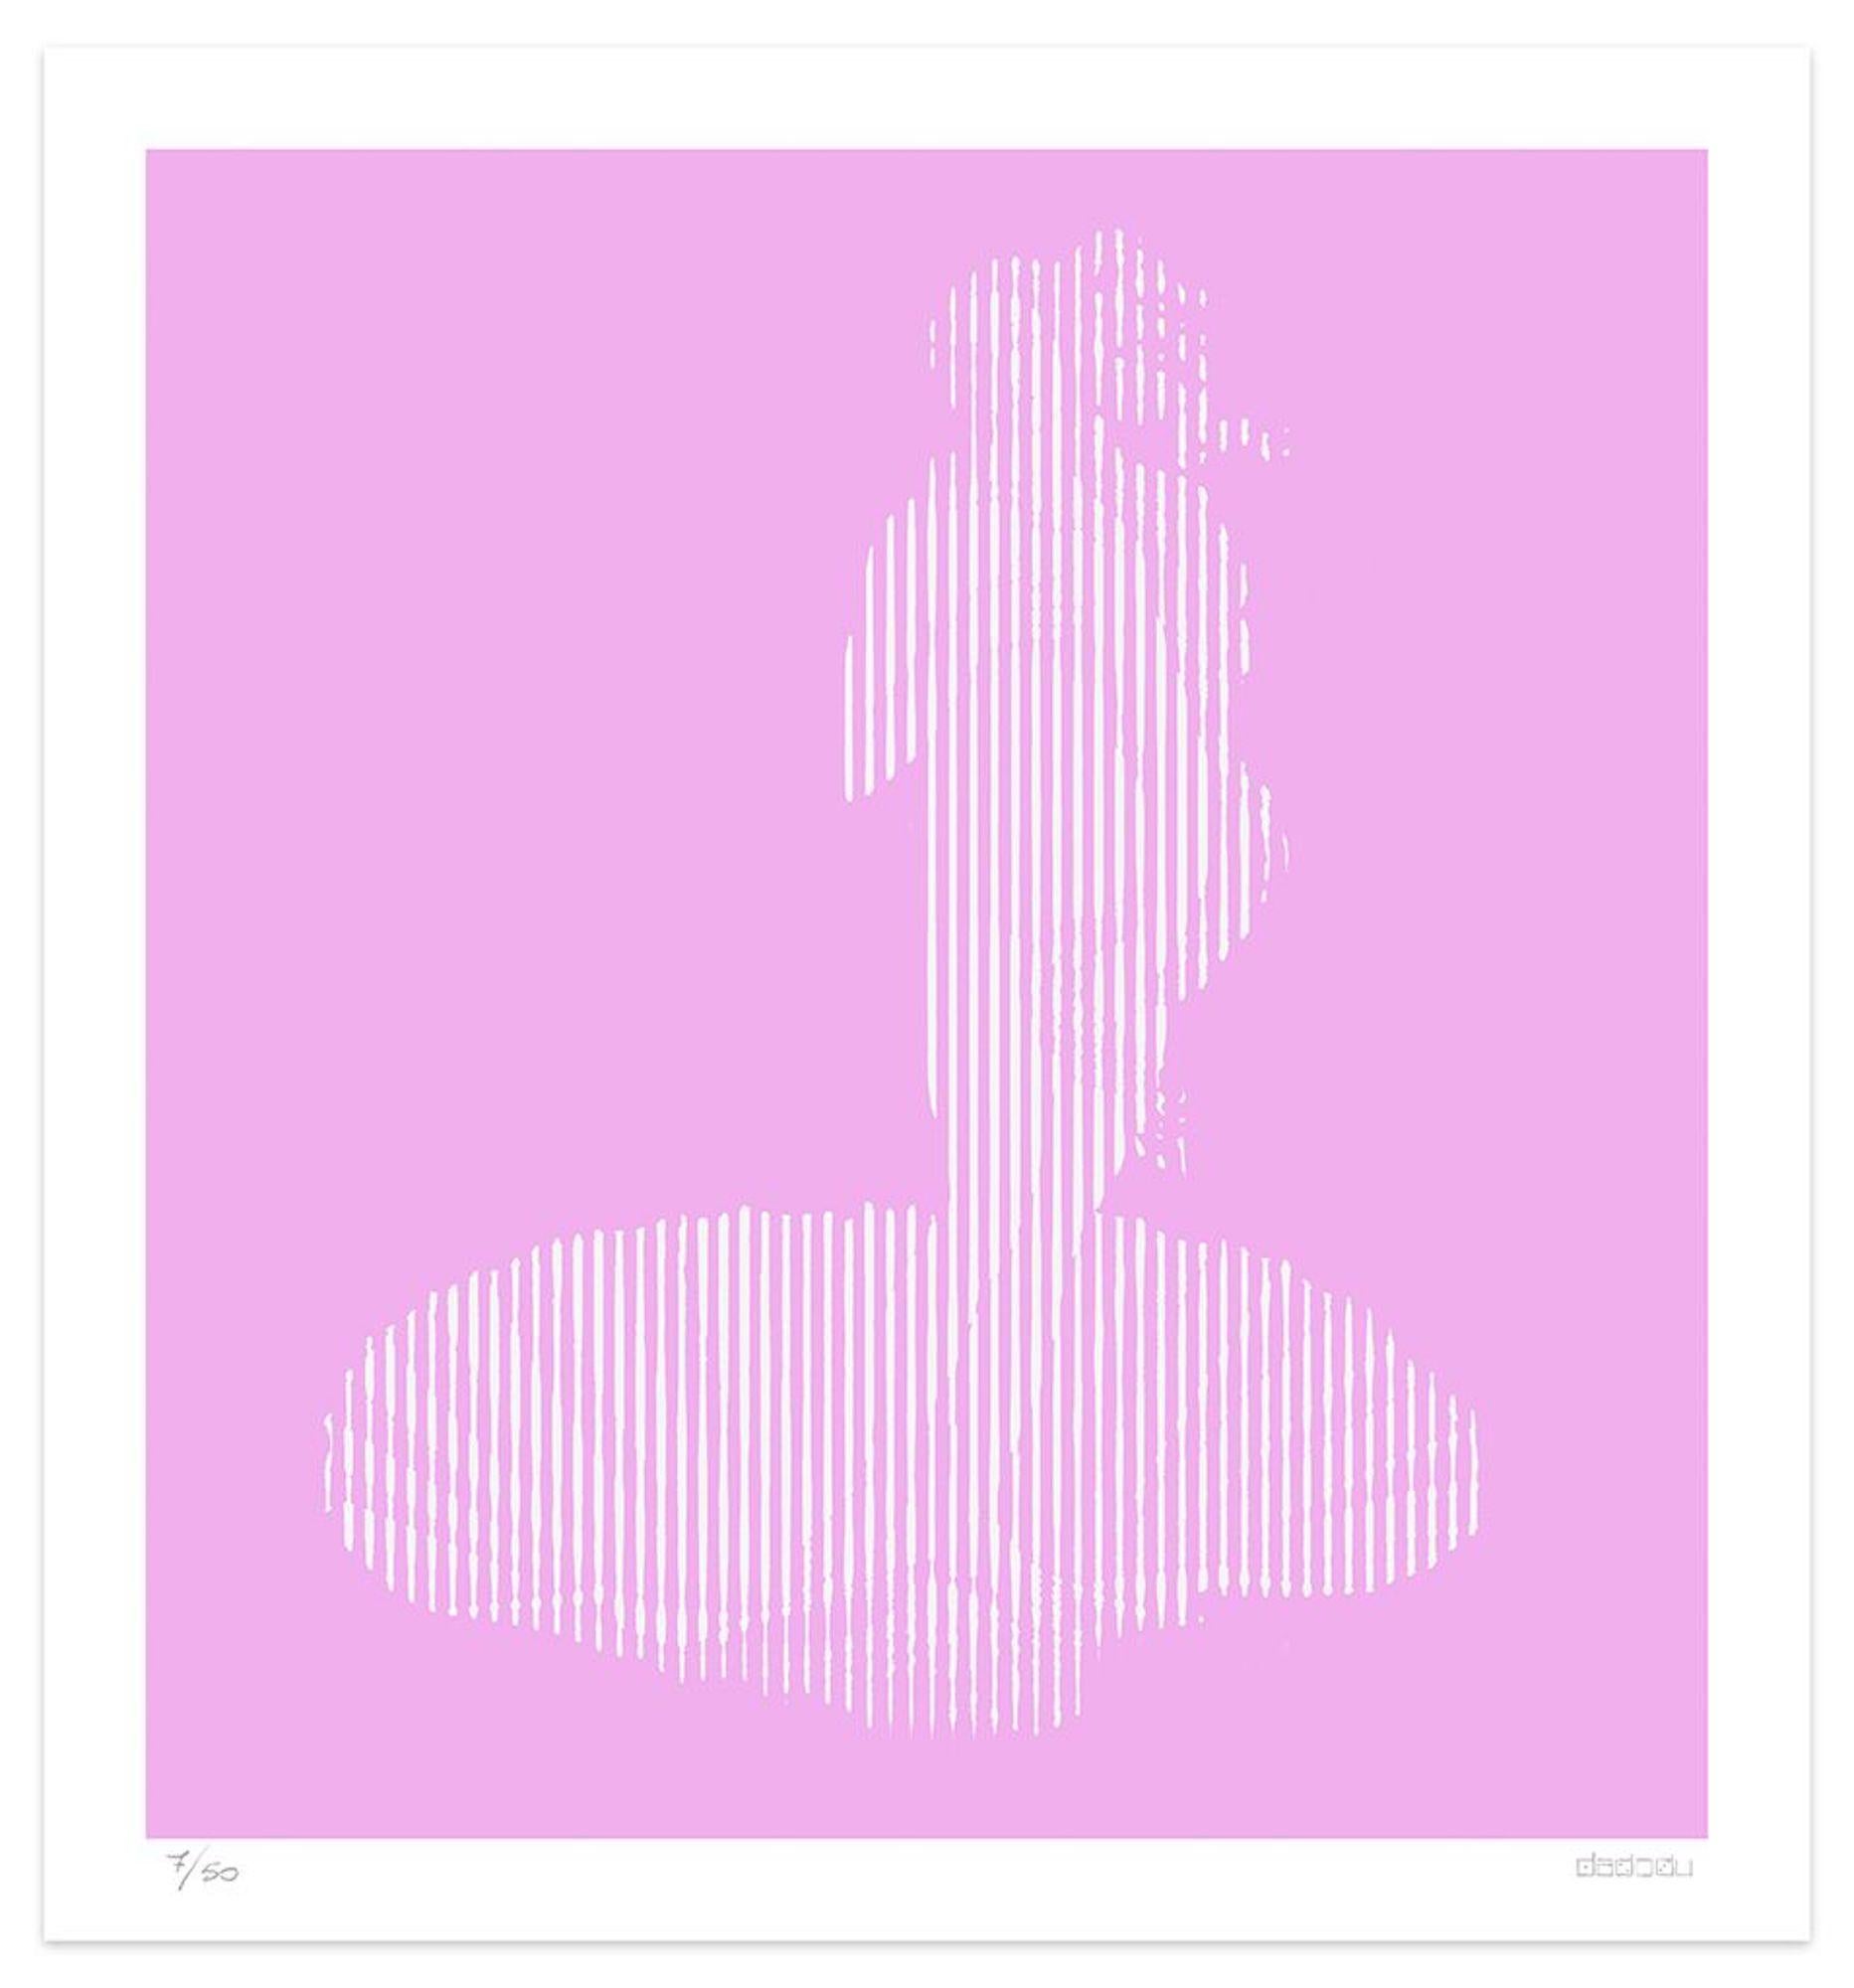 Dimensions de l'image : 60 x 55,5 cm.

Pinkish Lines est une élégante impression giclée réalisée par l'artiste contemporain Dadodu en 2016.

Cette œuvre d'art originale représente La naissance de Vénus de Sandro Botticelli avec des lignes blanches